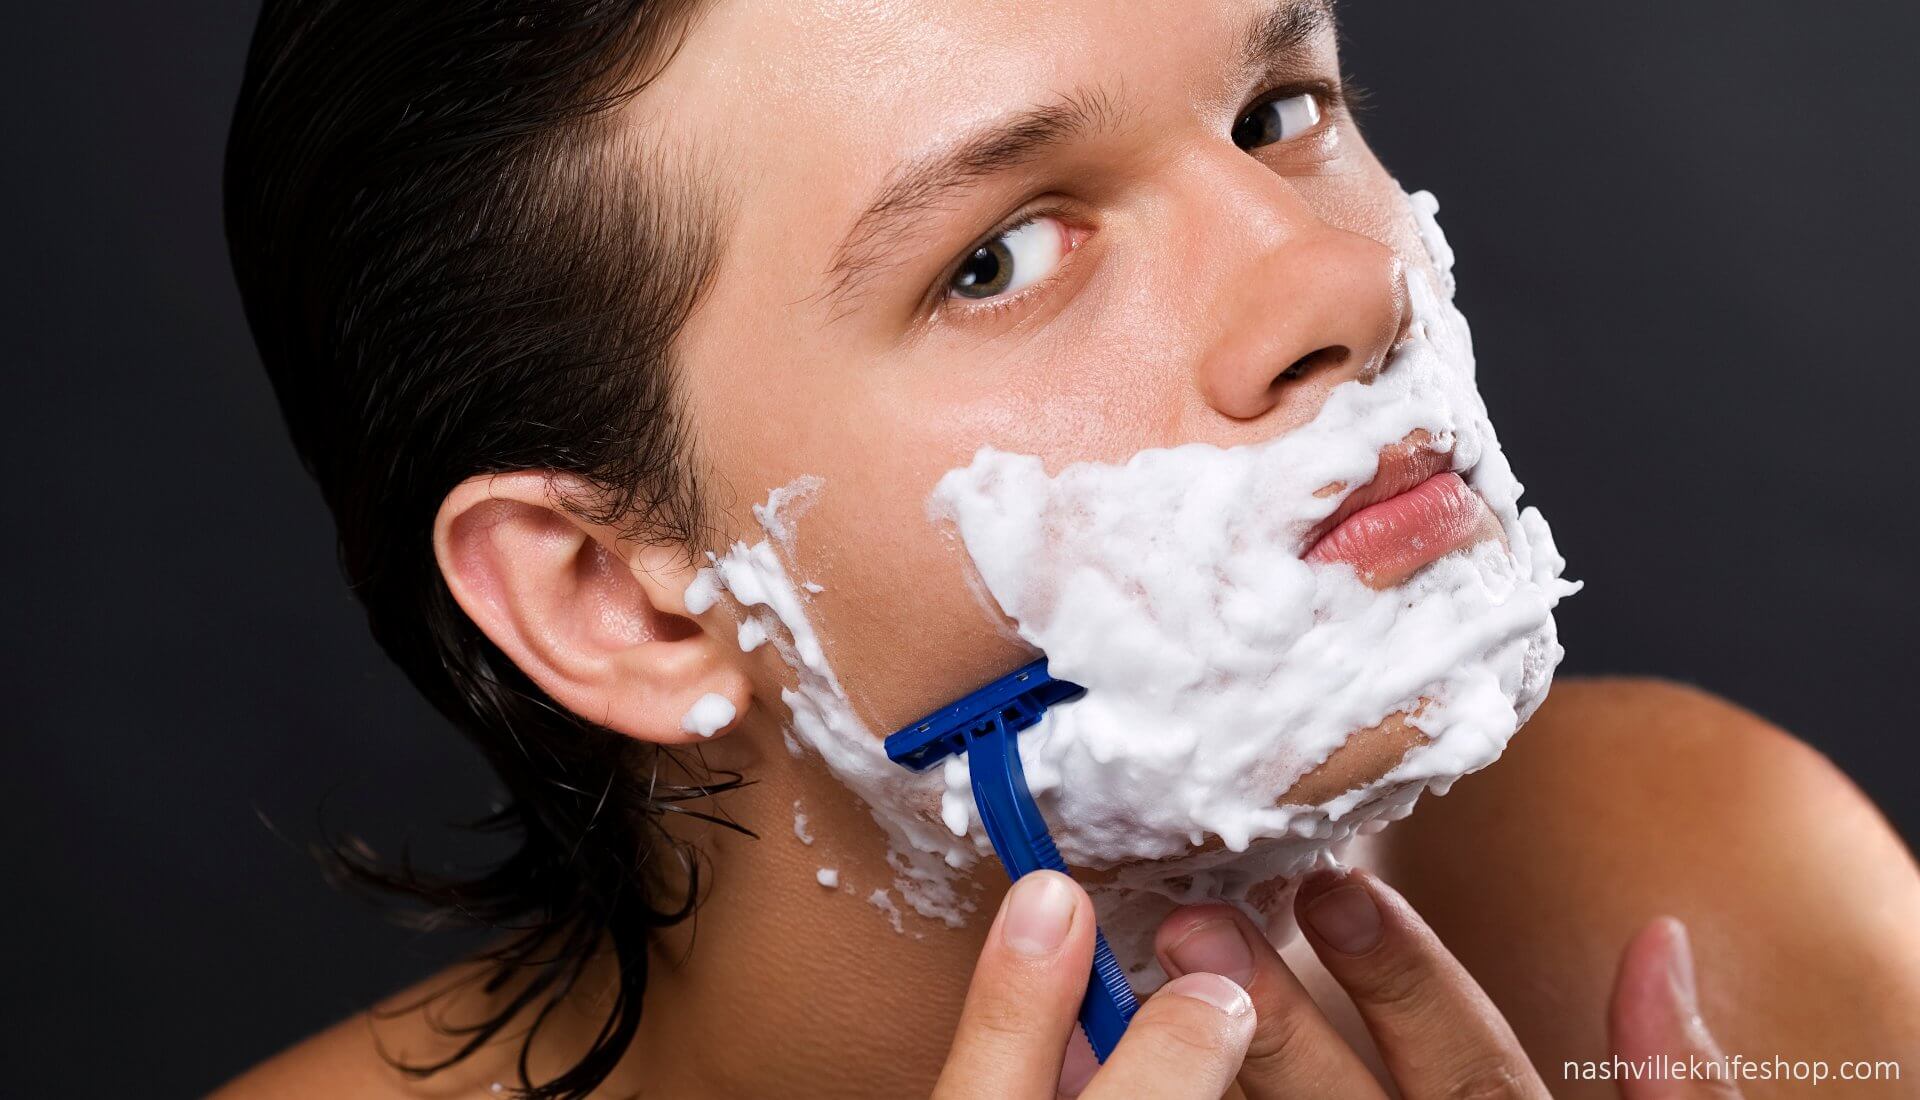 How often should men shave?